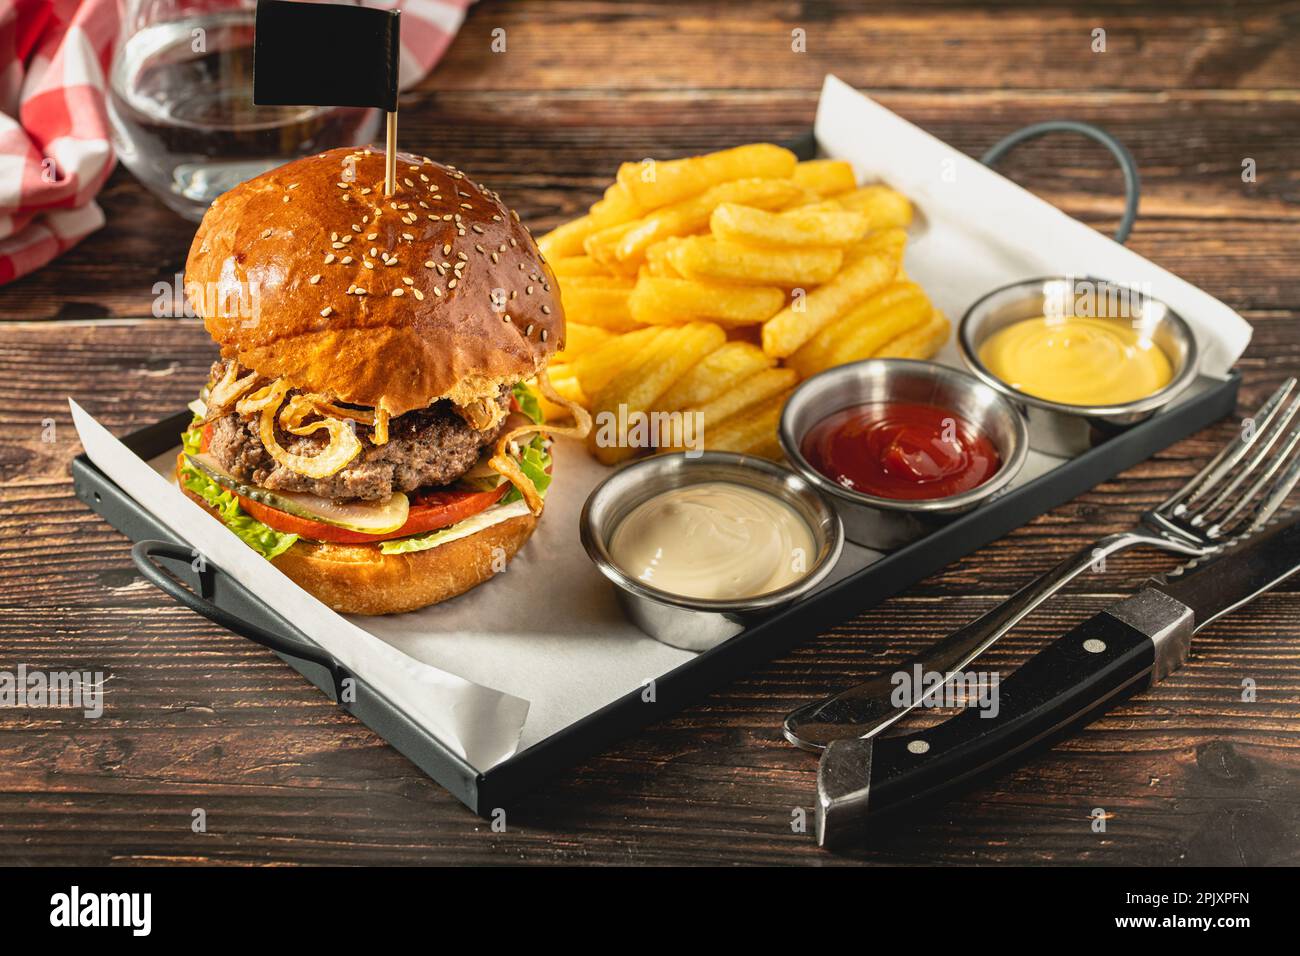 Delizioso hamburger alla griglia fatto in casa con manzo, pomodori, formaggio e lattuga su sfondo rustico in legno Foto Stock